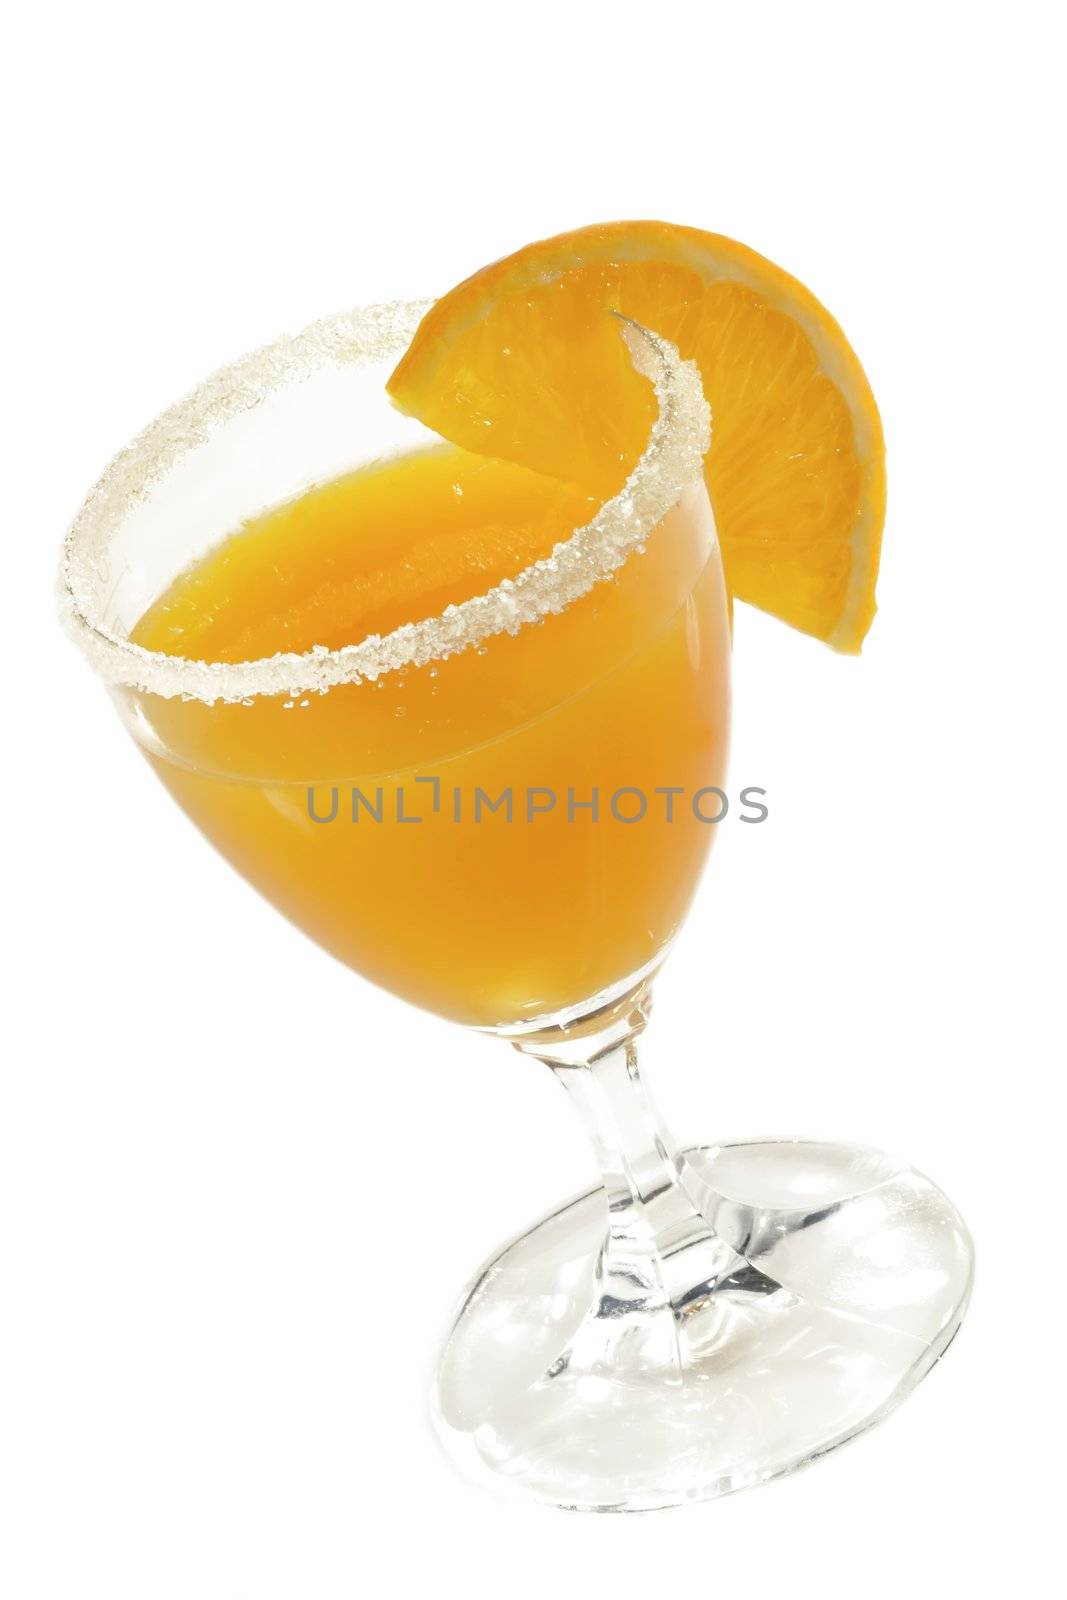 Orange-Juice by Teamarbeit